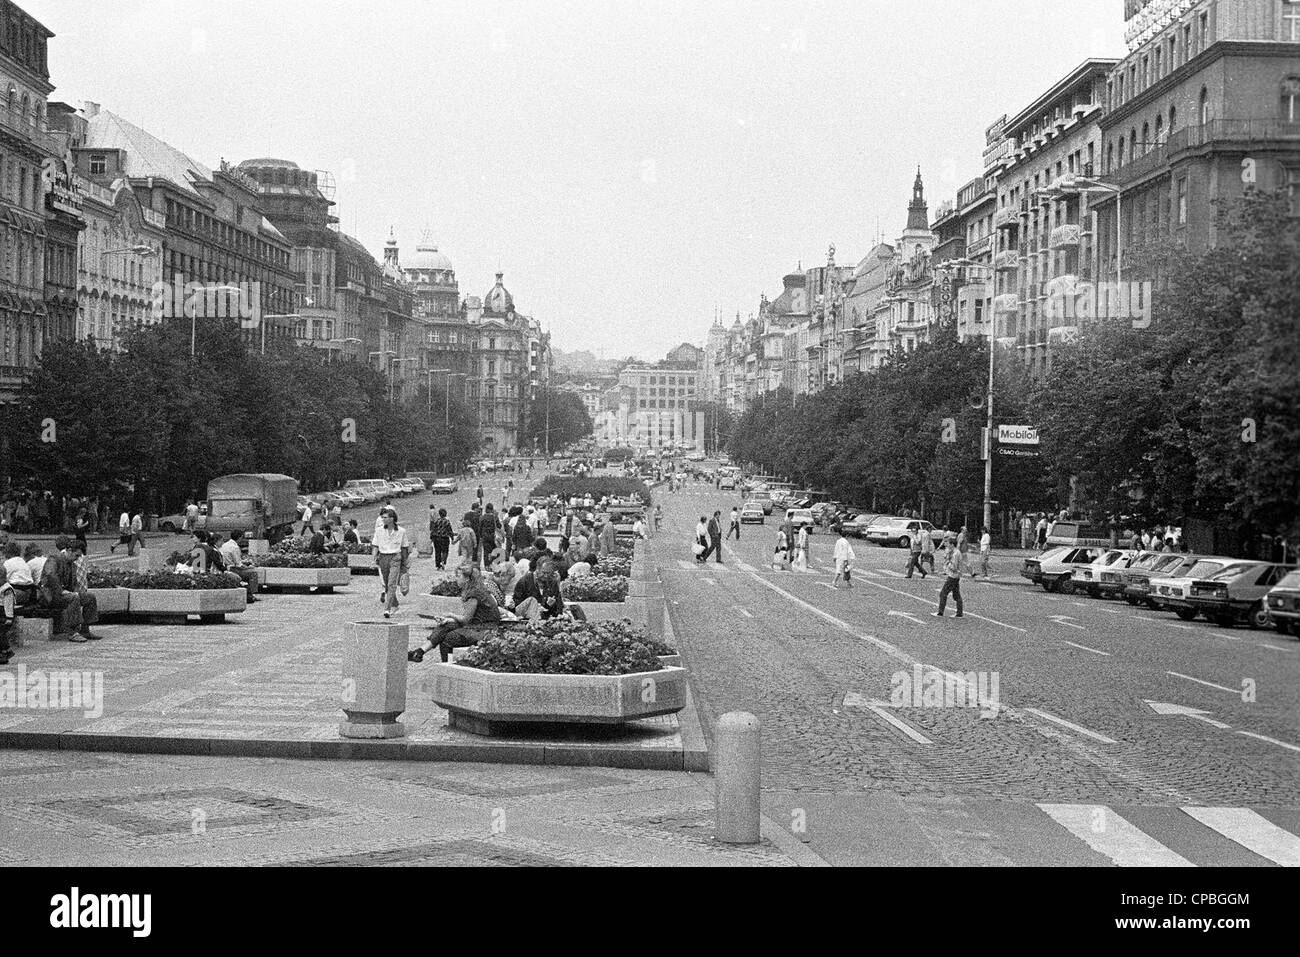 Vaclavske Namesti, Prag - Tschechische Hauptstadt im letzten Jahrzehnt des Kommunismus Regime. Foto im Jahr 1987. Jahr. Stockfoto